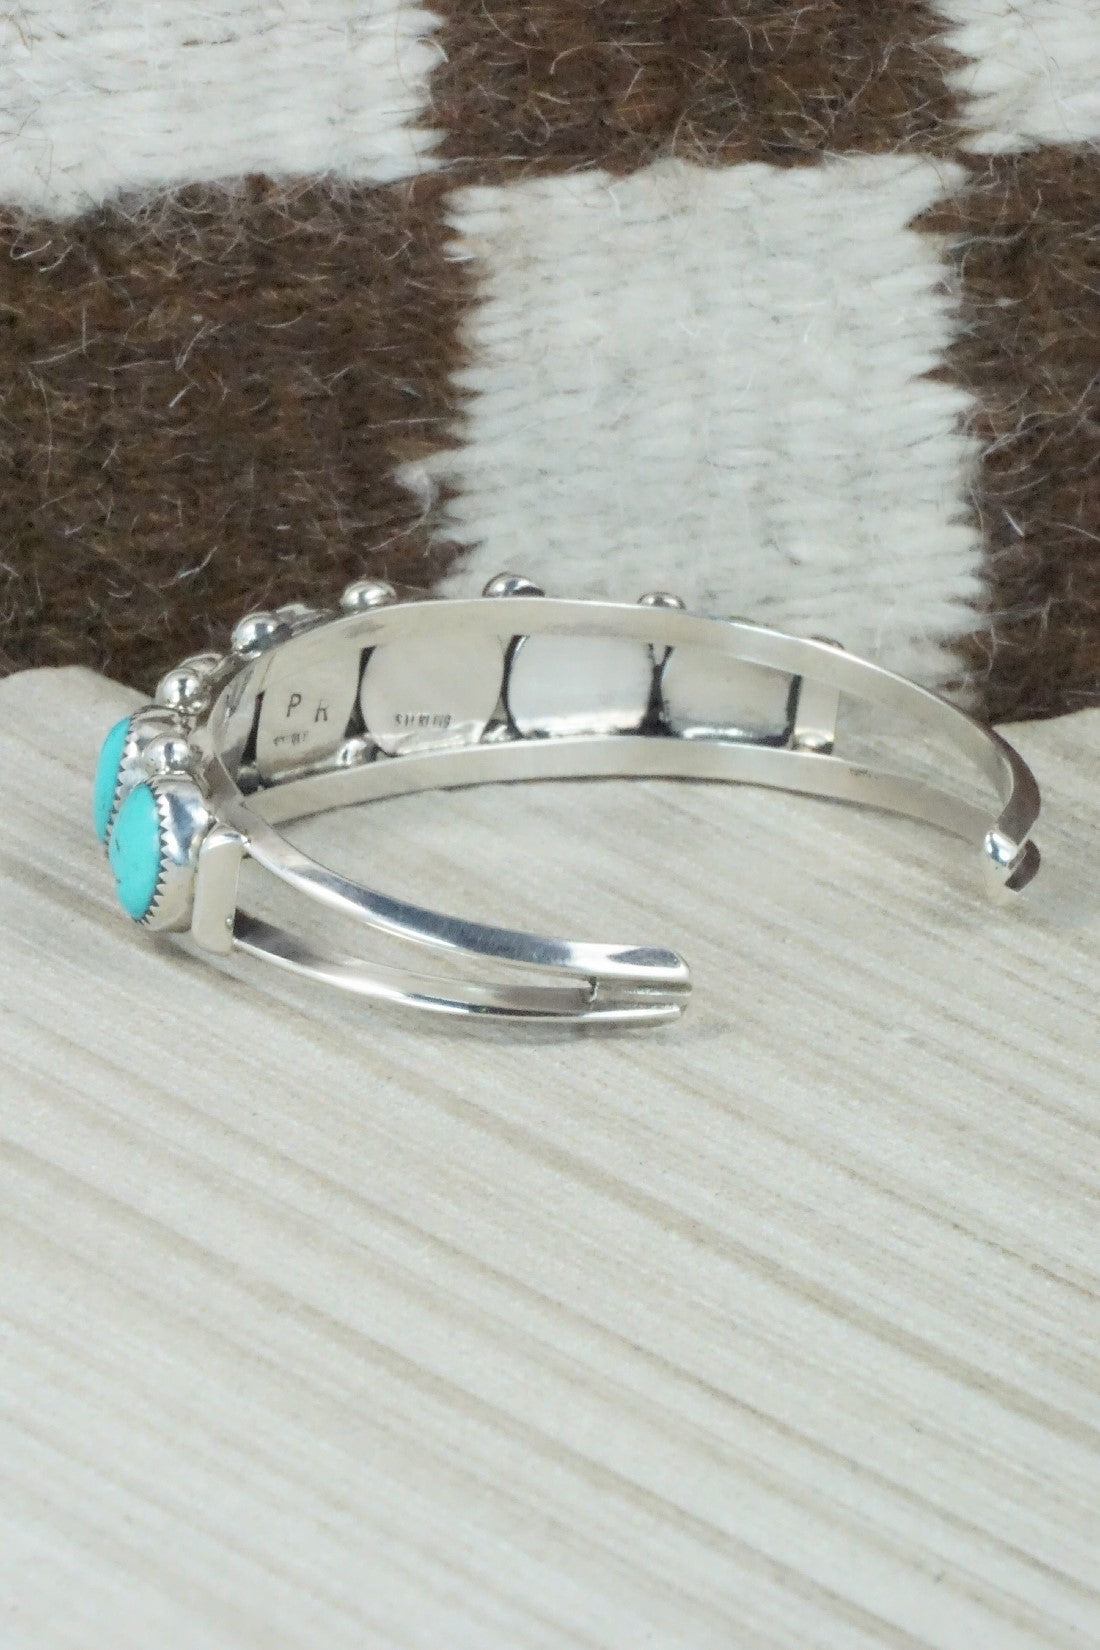 Turquoise & Sterling Silver Bracelet - Priscilla Reeder